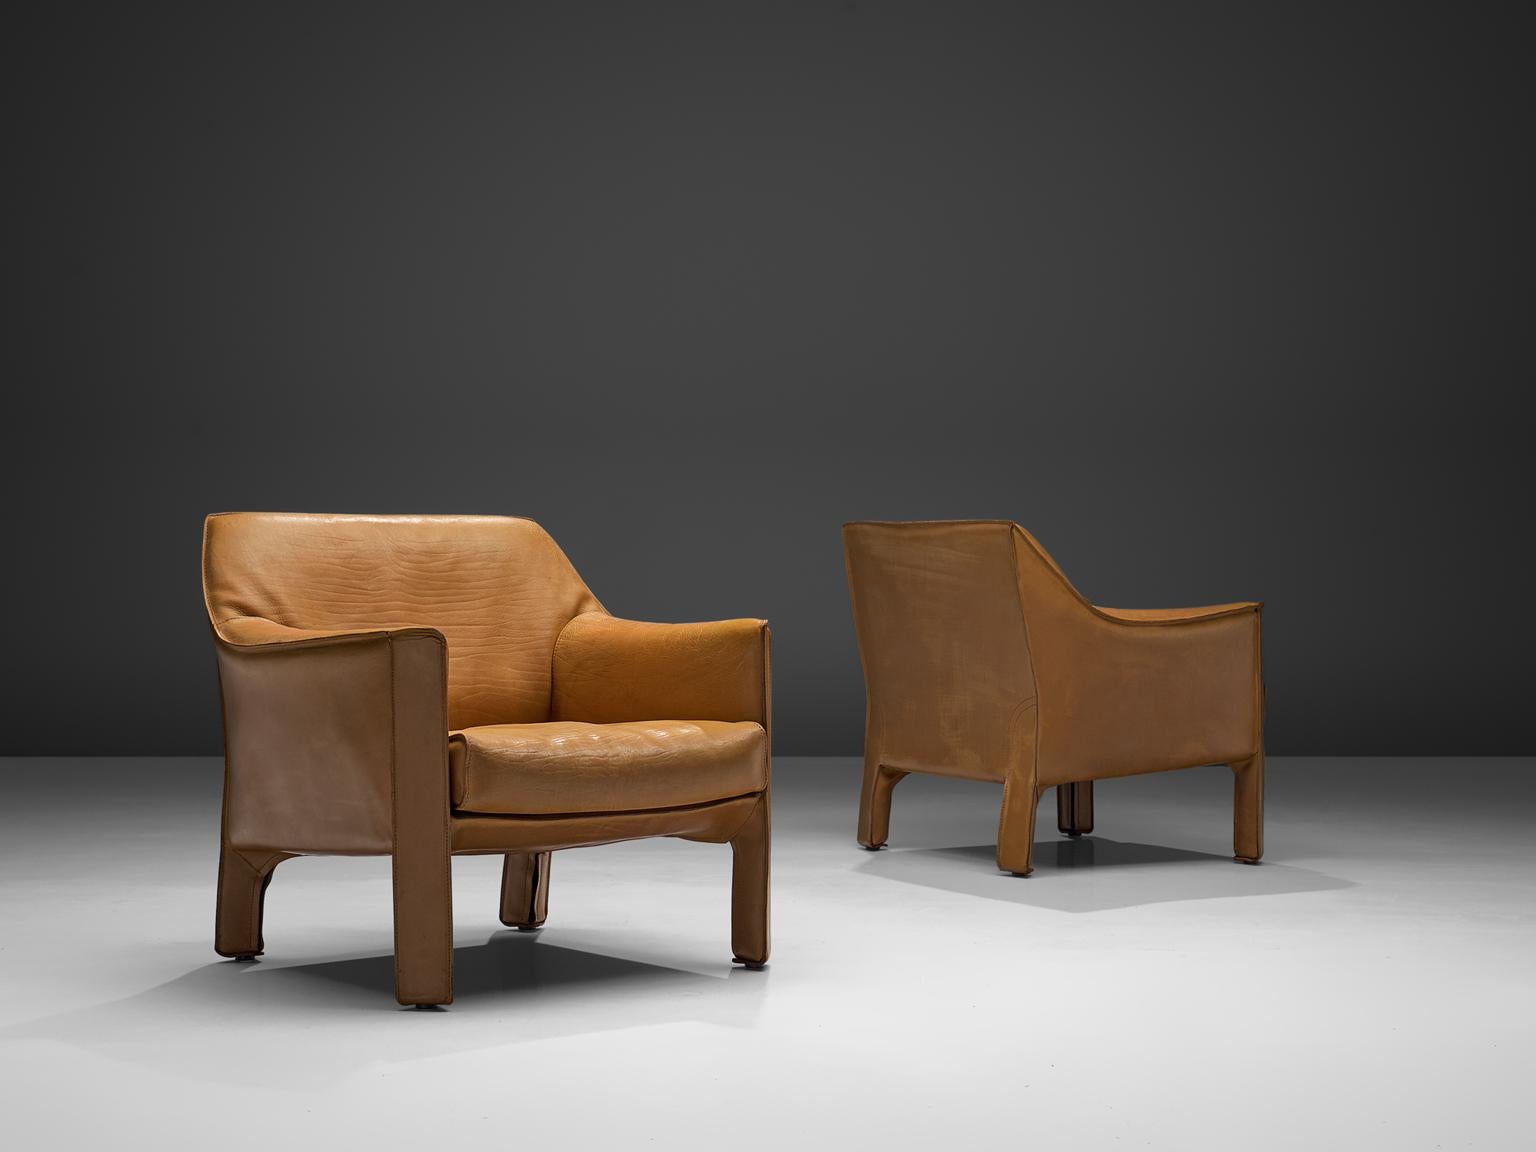 Mario Bellini für Cassina, Sesselpaar CAB 415, Metall und helles cognacfarbenes Leder, Italien, 1987.

Diese großartigen Lounge-Sessel wurden in den 1980er Jahren von Mario Bellini entworfen. Das Konzept sieht vor, dass der Stuhl im Laufe der Zeit